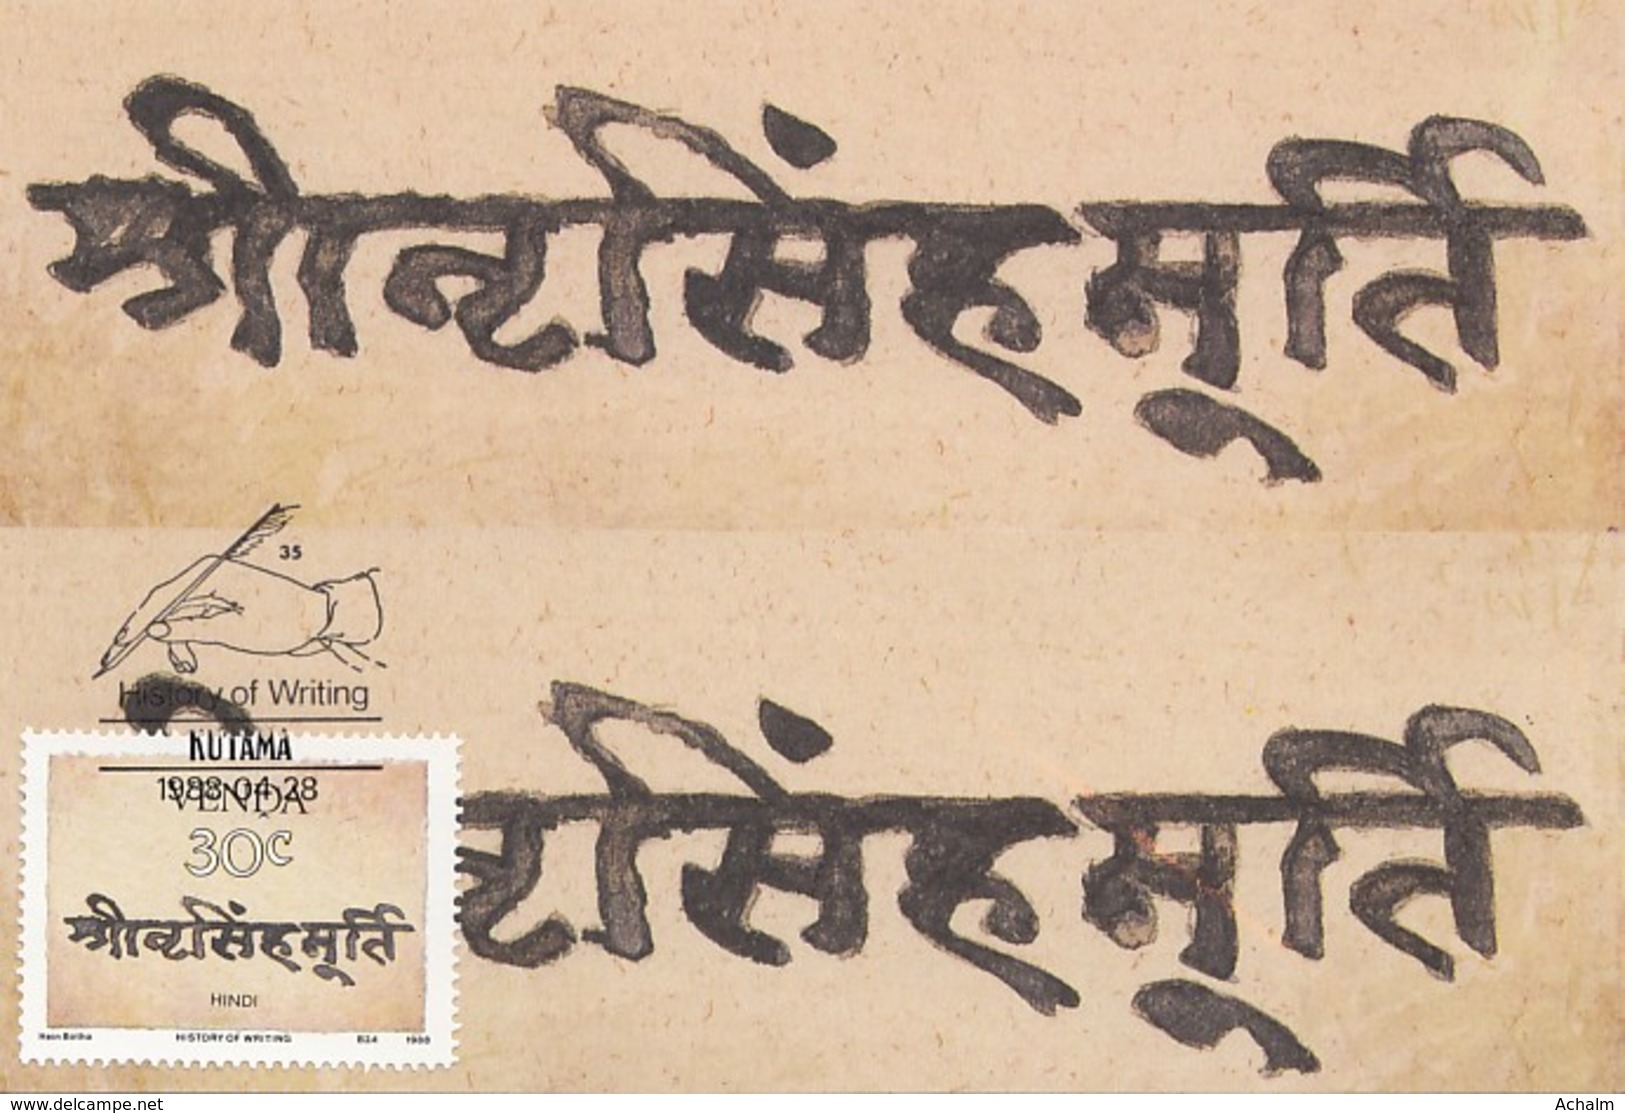 Venda - Maximum Card Of 1988 - MiNr. 172 - History Of The Writing - Hindi Script - Venda